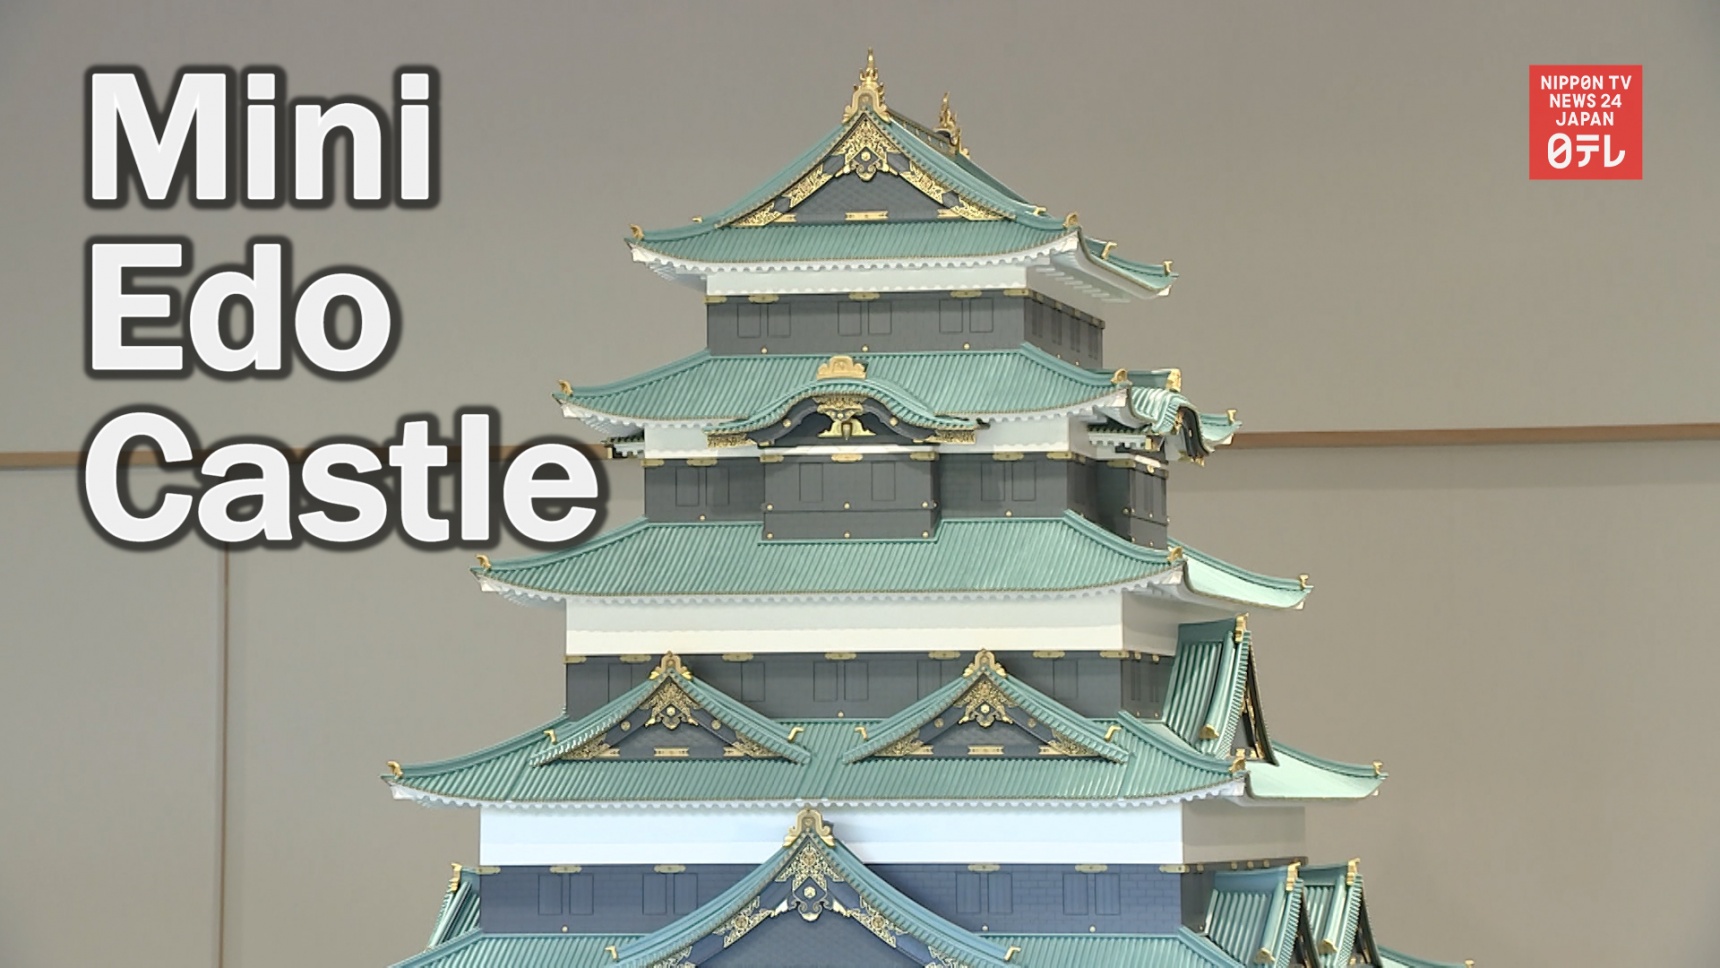 Miniature Edo Castle